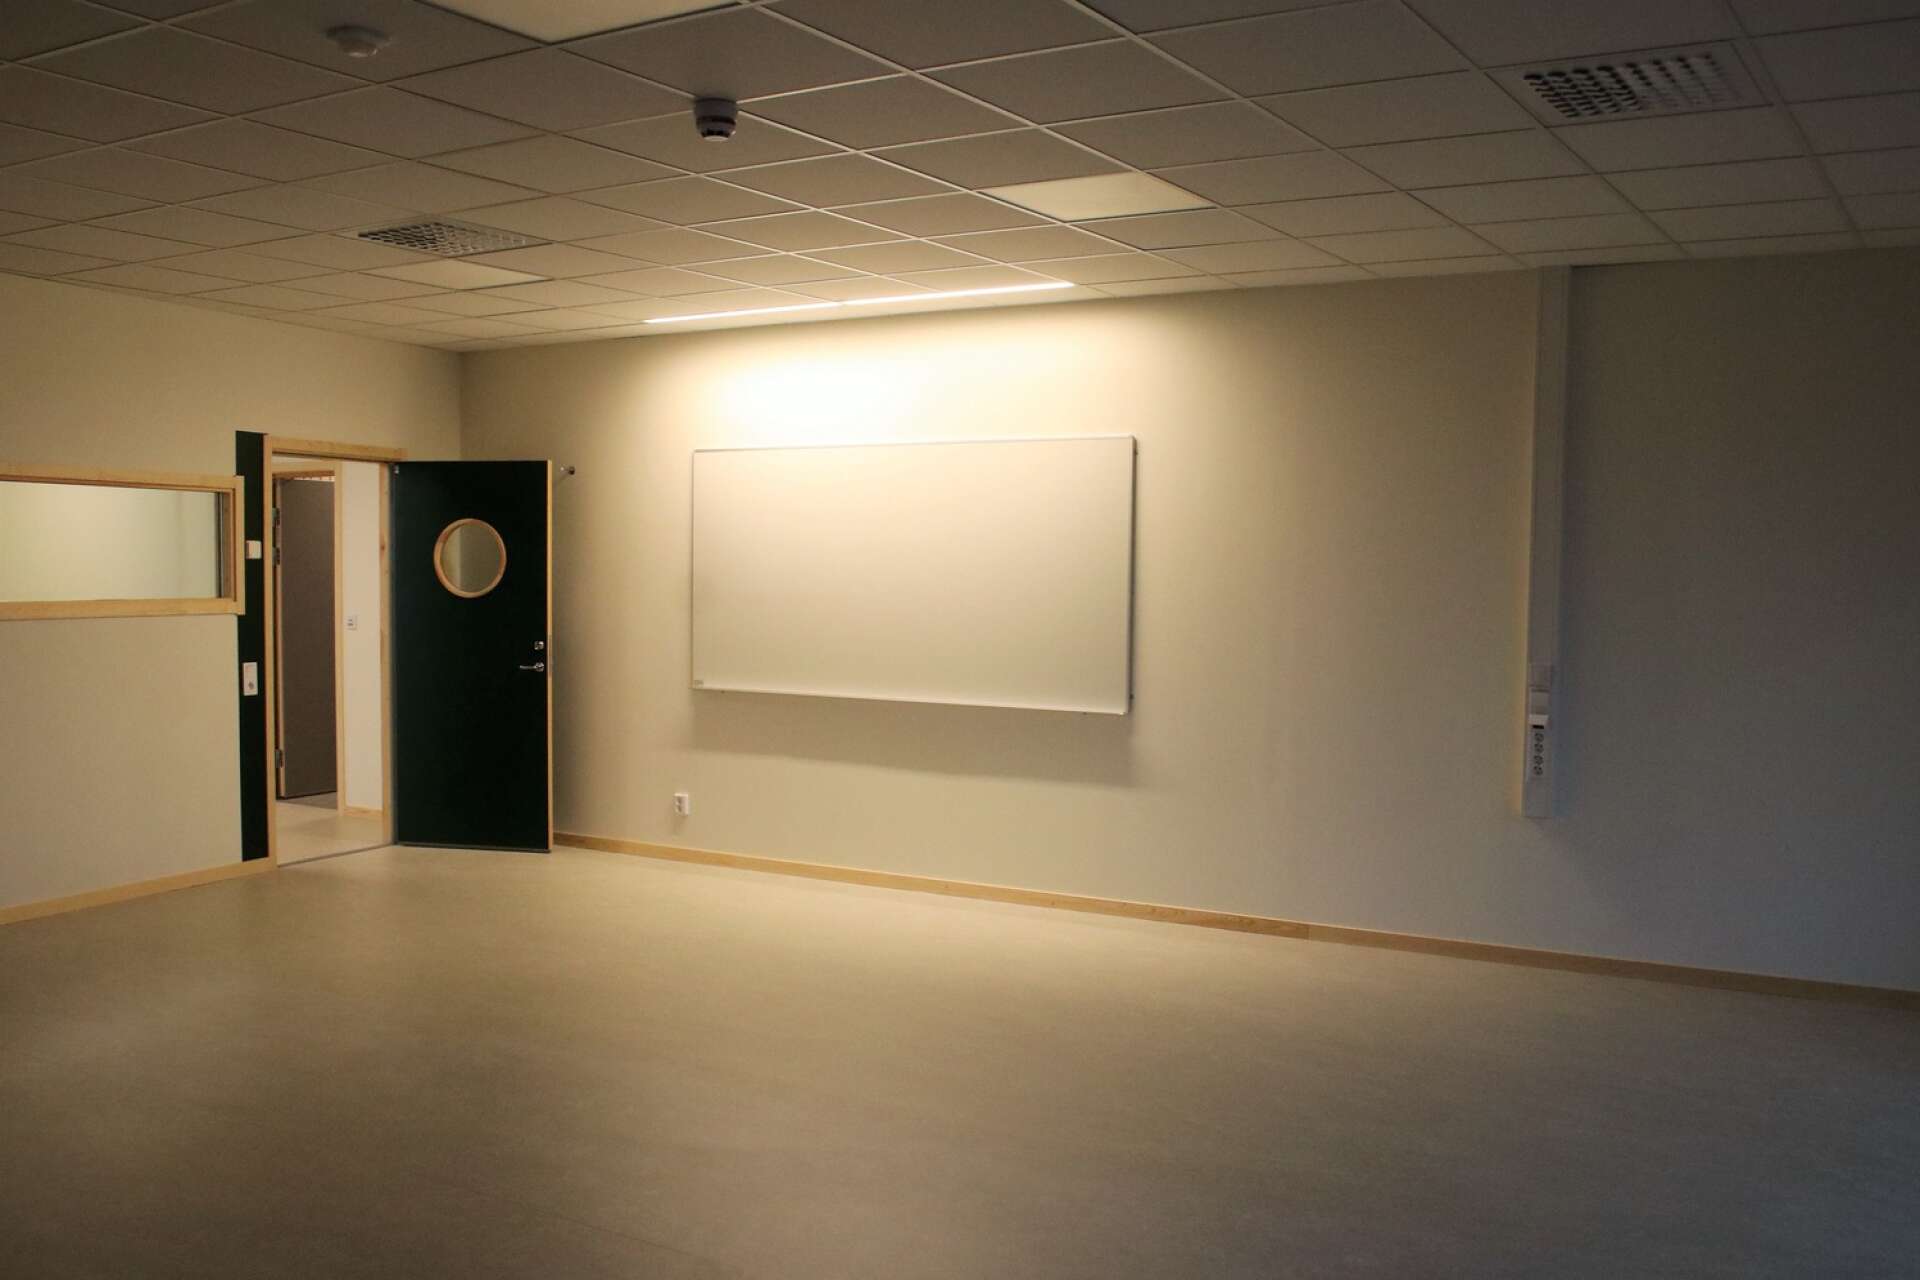 Så här ser klassrummen ut.